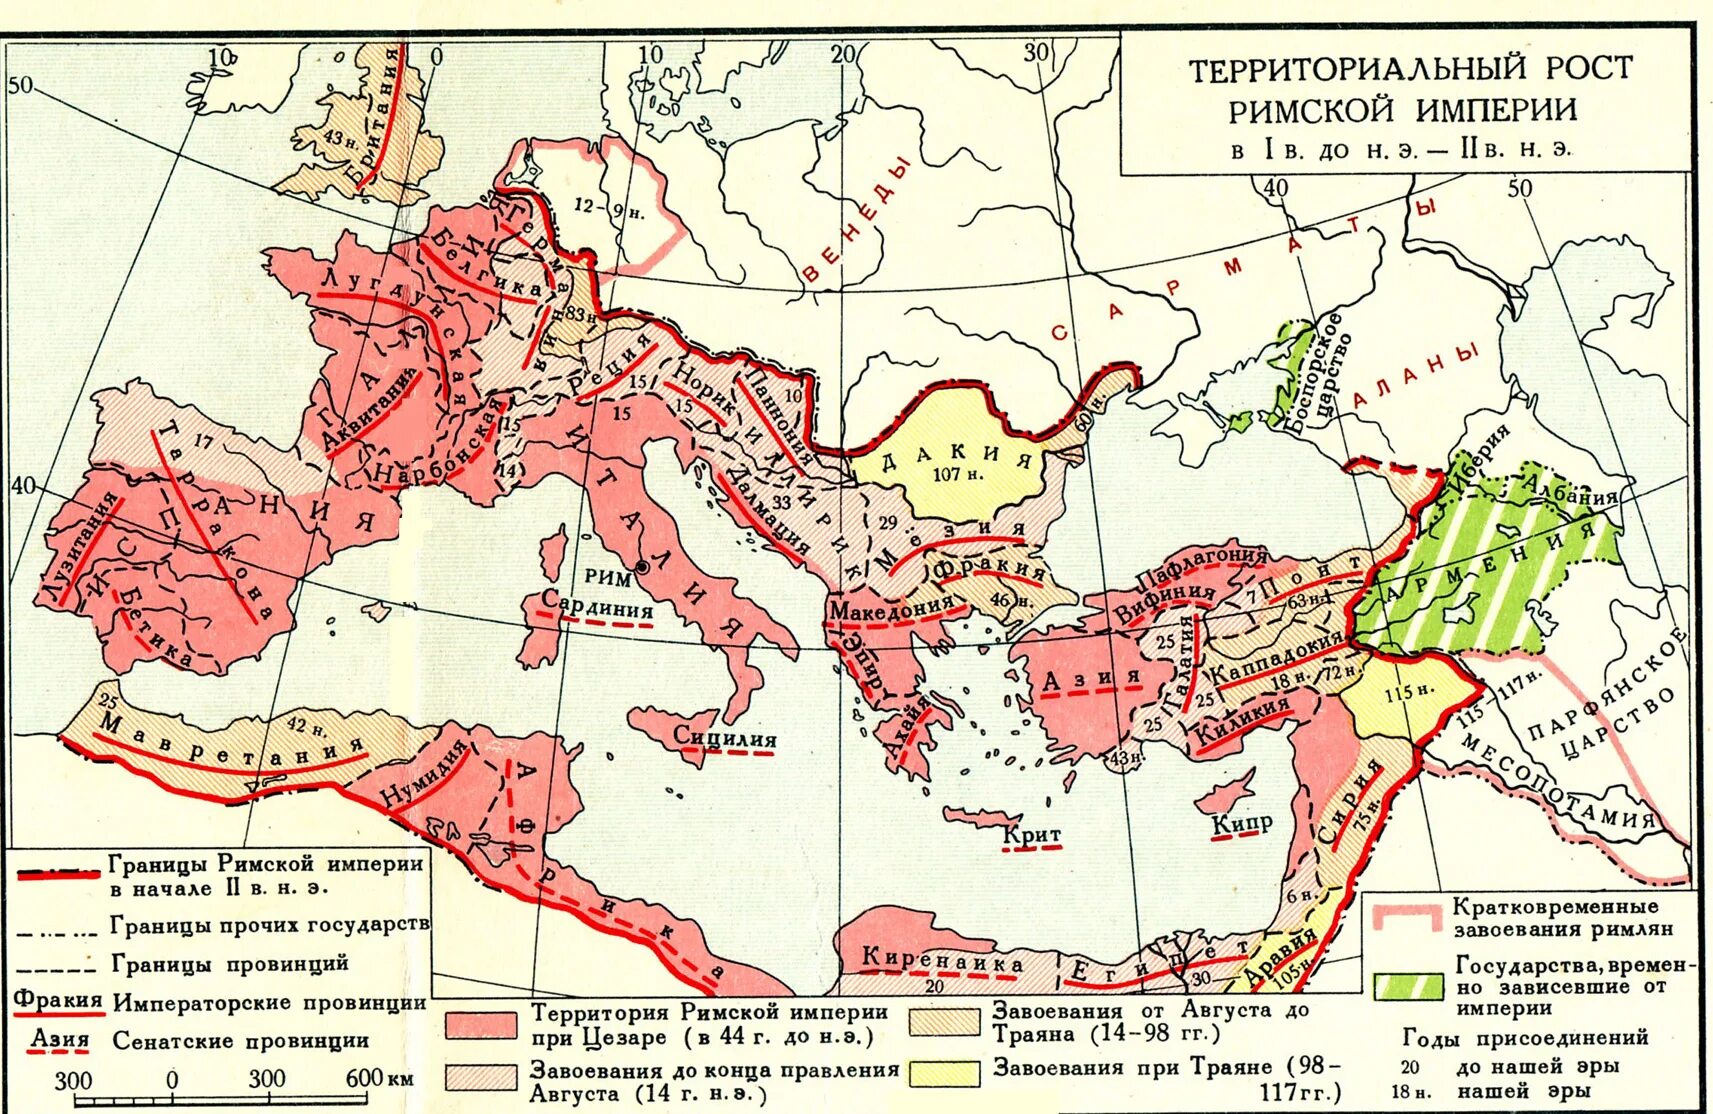 2 3 век нашей эры. Древний Рим Империя карта. Римская Империя 1-2 век н.э карта. Римская Империя карта 2 век н.э. Карта римской империи 1 века до н э.